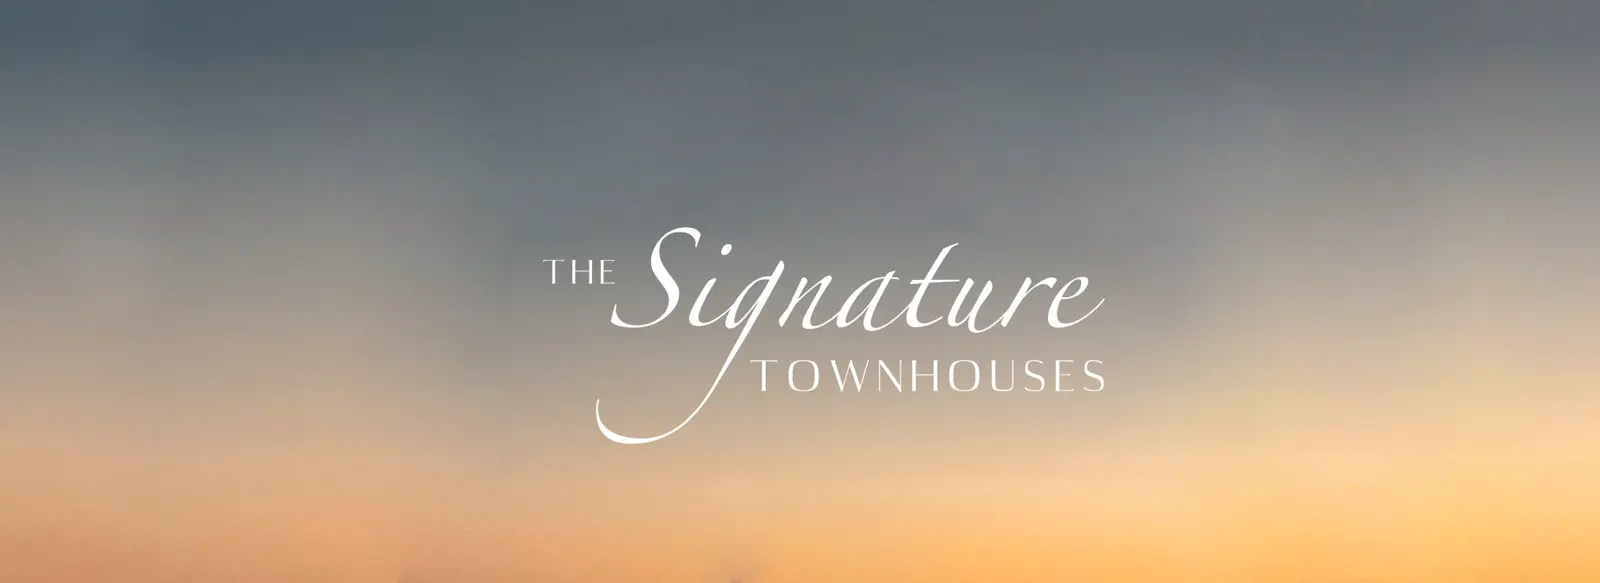 Offres de maisons de ville Emaar Signature